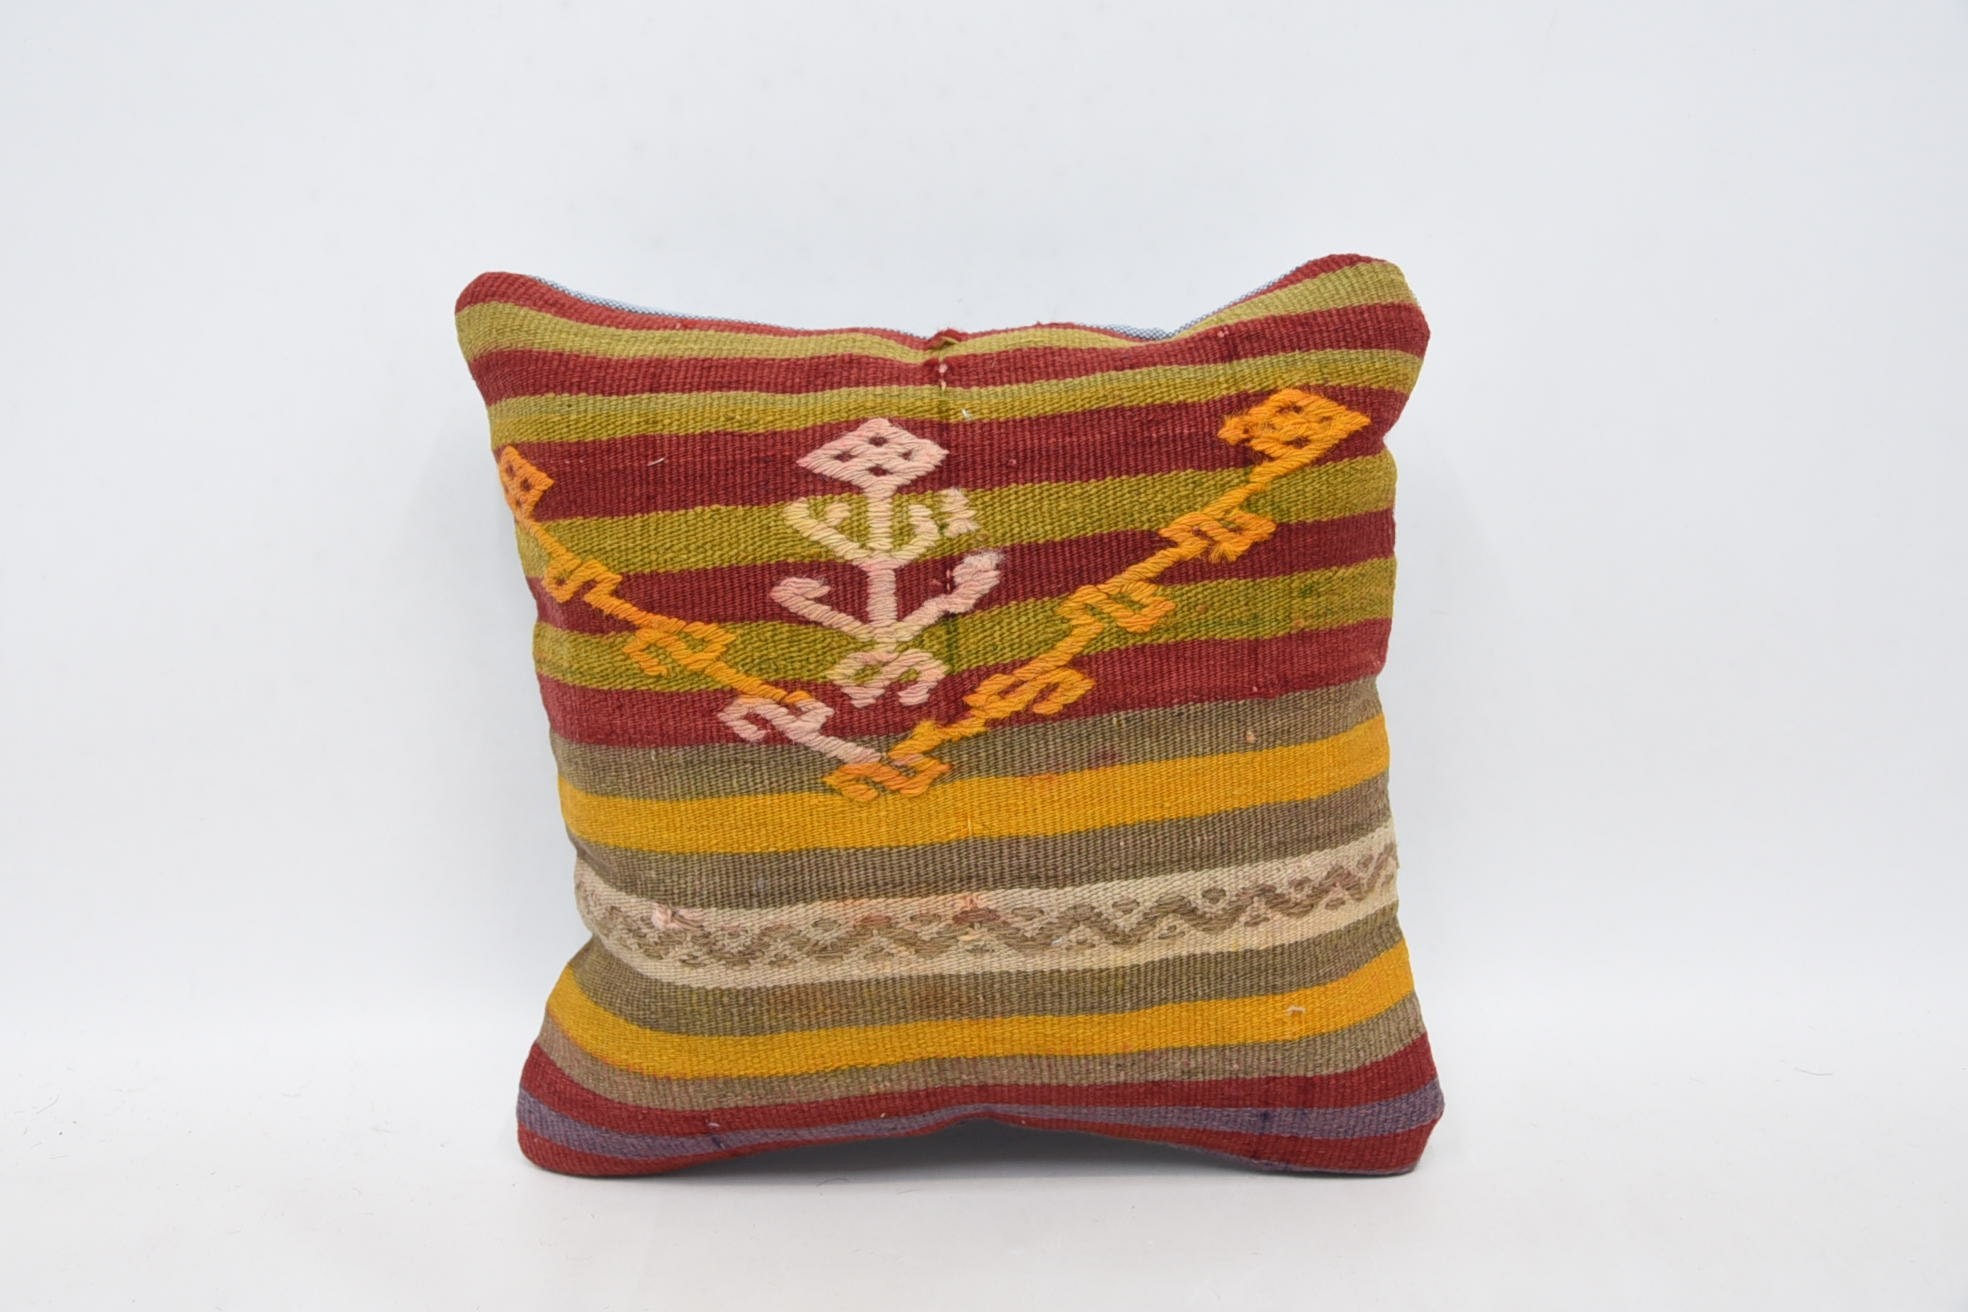 12"x12" Red Cushion, Handmade Kilim Cushion, Throw Kilim Pillow, Aztec Pillow, Kilim Cushion Sham, Ethnic Throw Pillow Cover